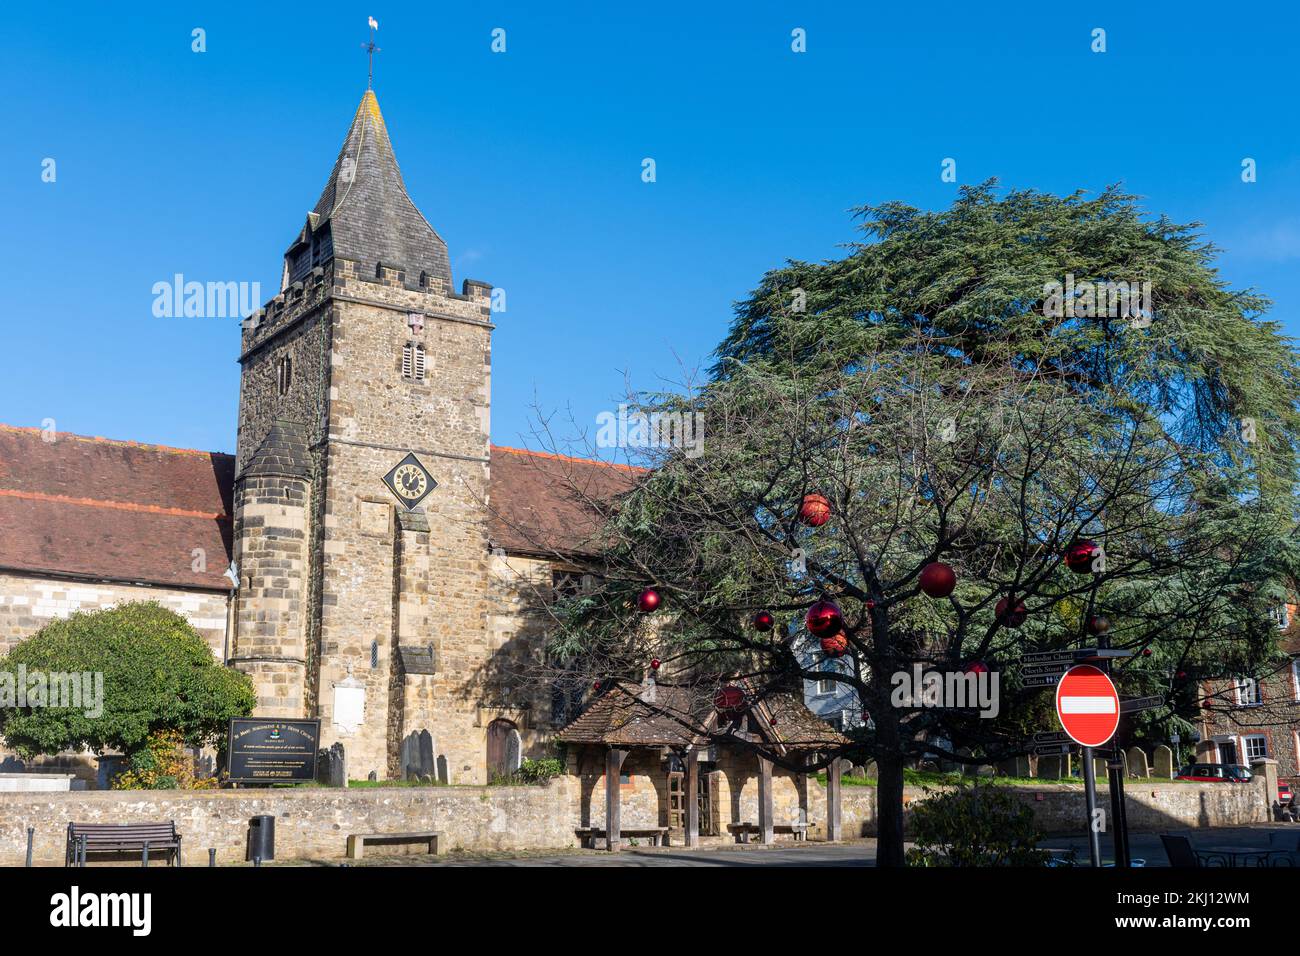 St Mary Magdalene & St Denys Church en Midhurst, West Sussex, Inglaterra, Reino Unido, con un árbol en la plaza del mercado decorado con bolas rojas para Navidad Foto de stock